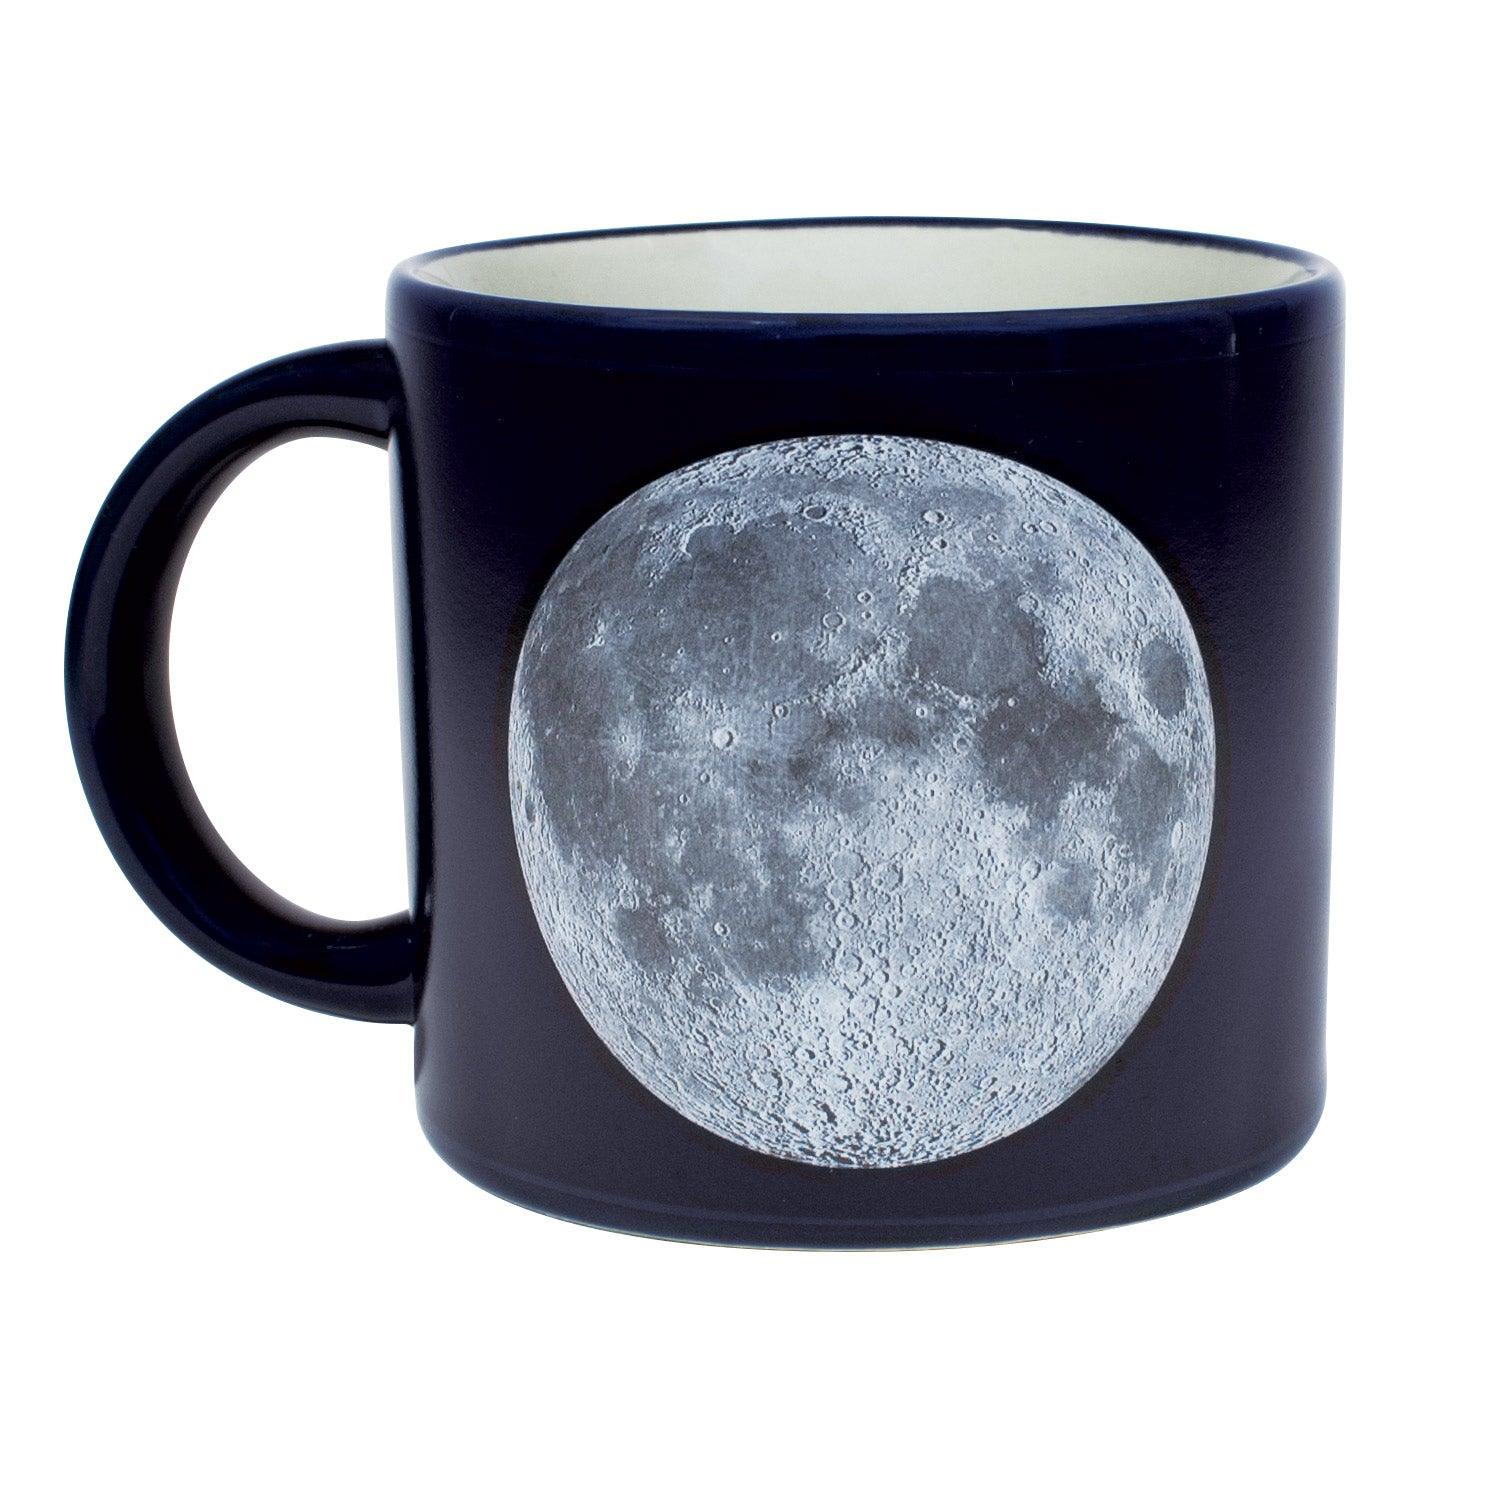 Mighty mug : r/MoonPissing